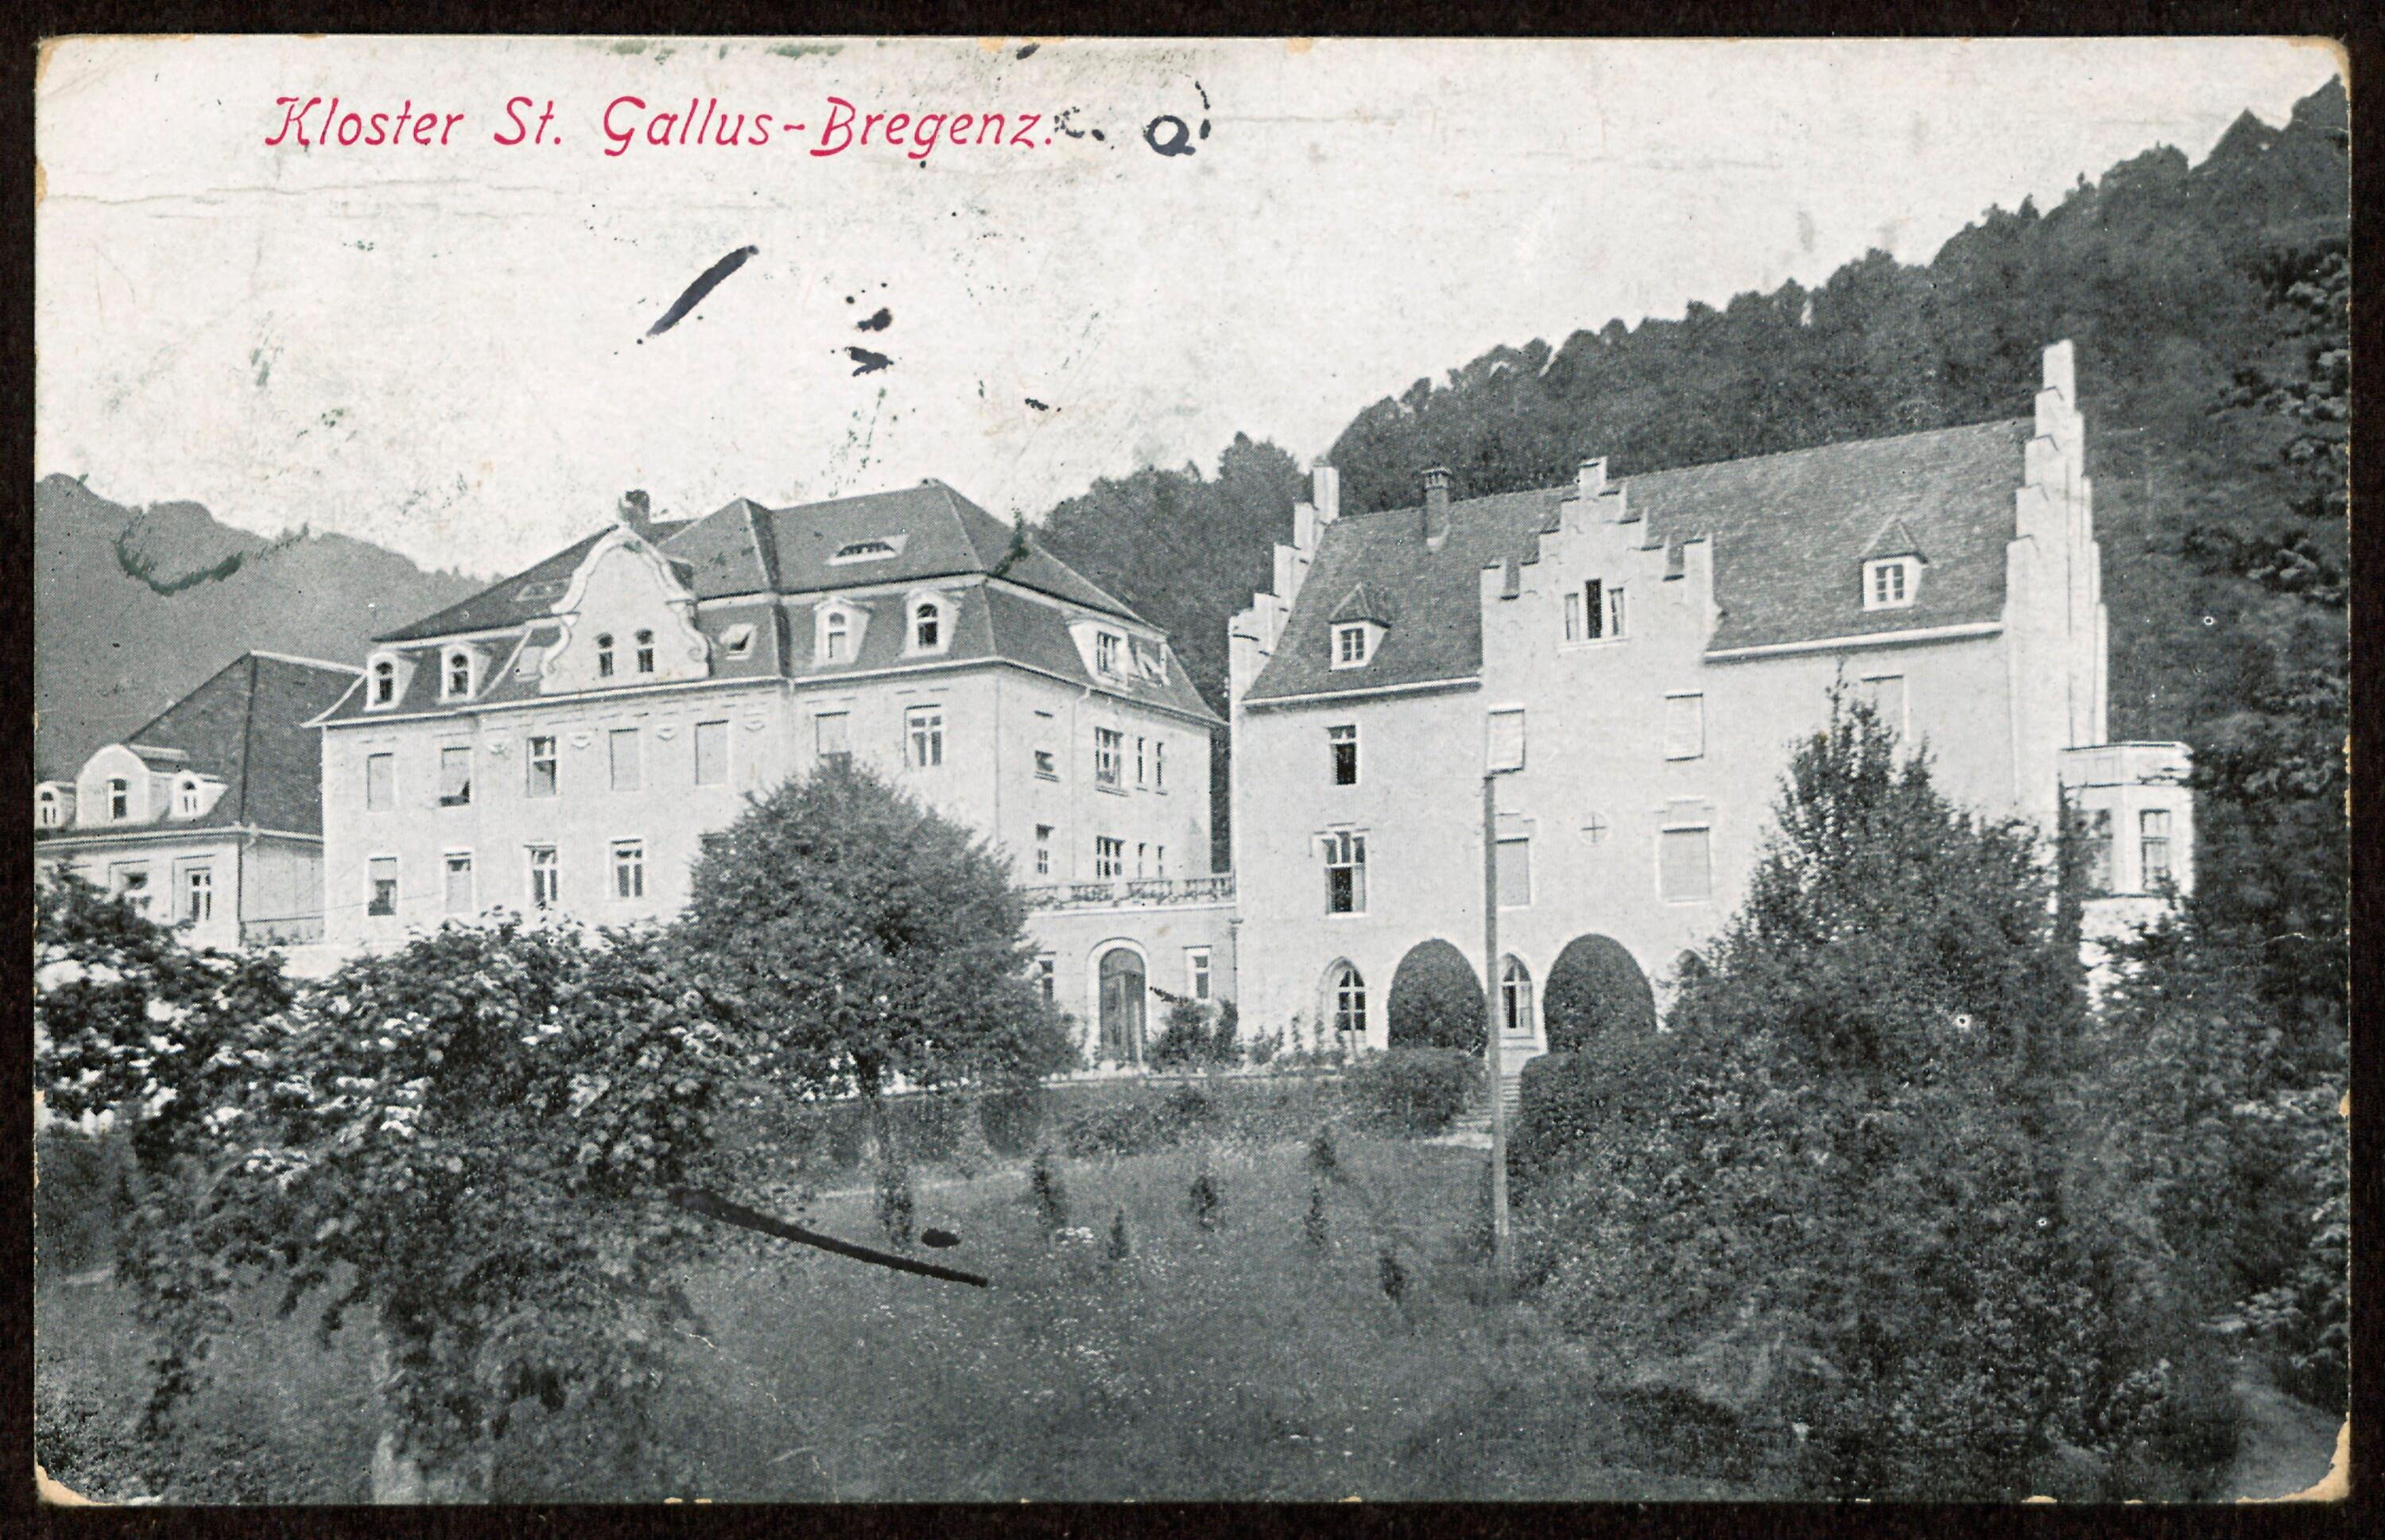 Kloster St. Gallus - Bregenz></div>


    <hr>
    <div class=